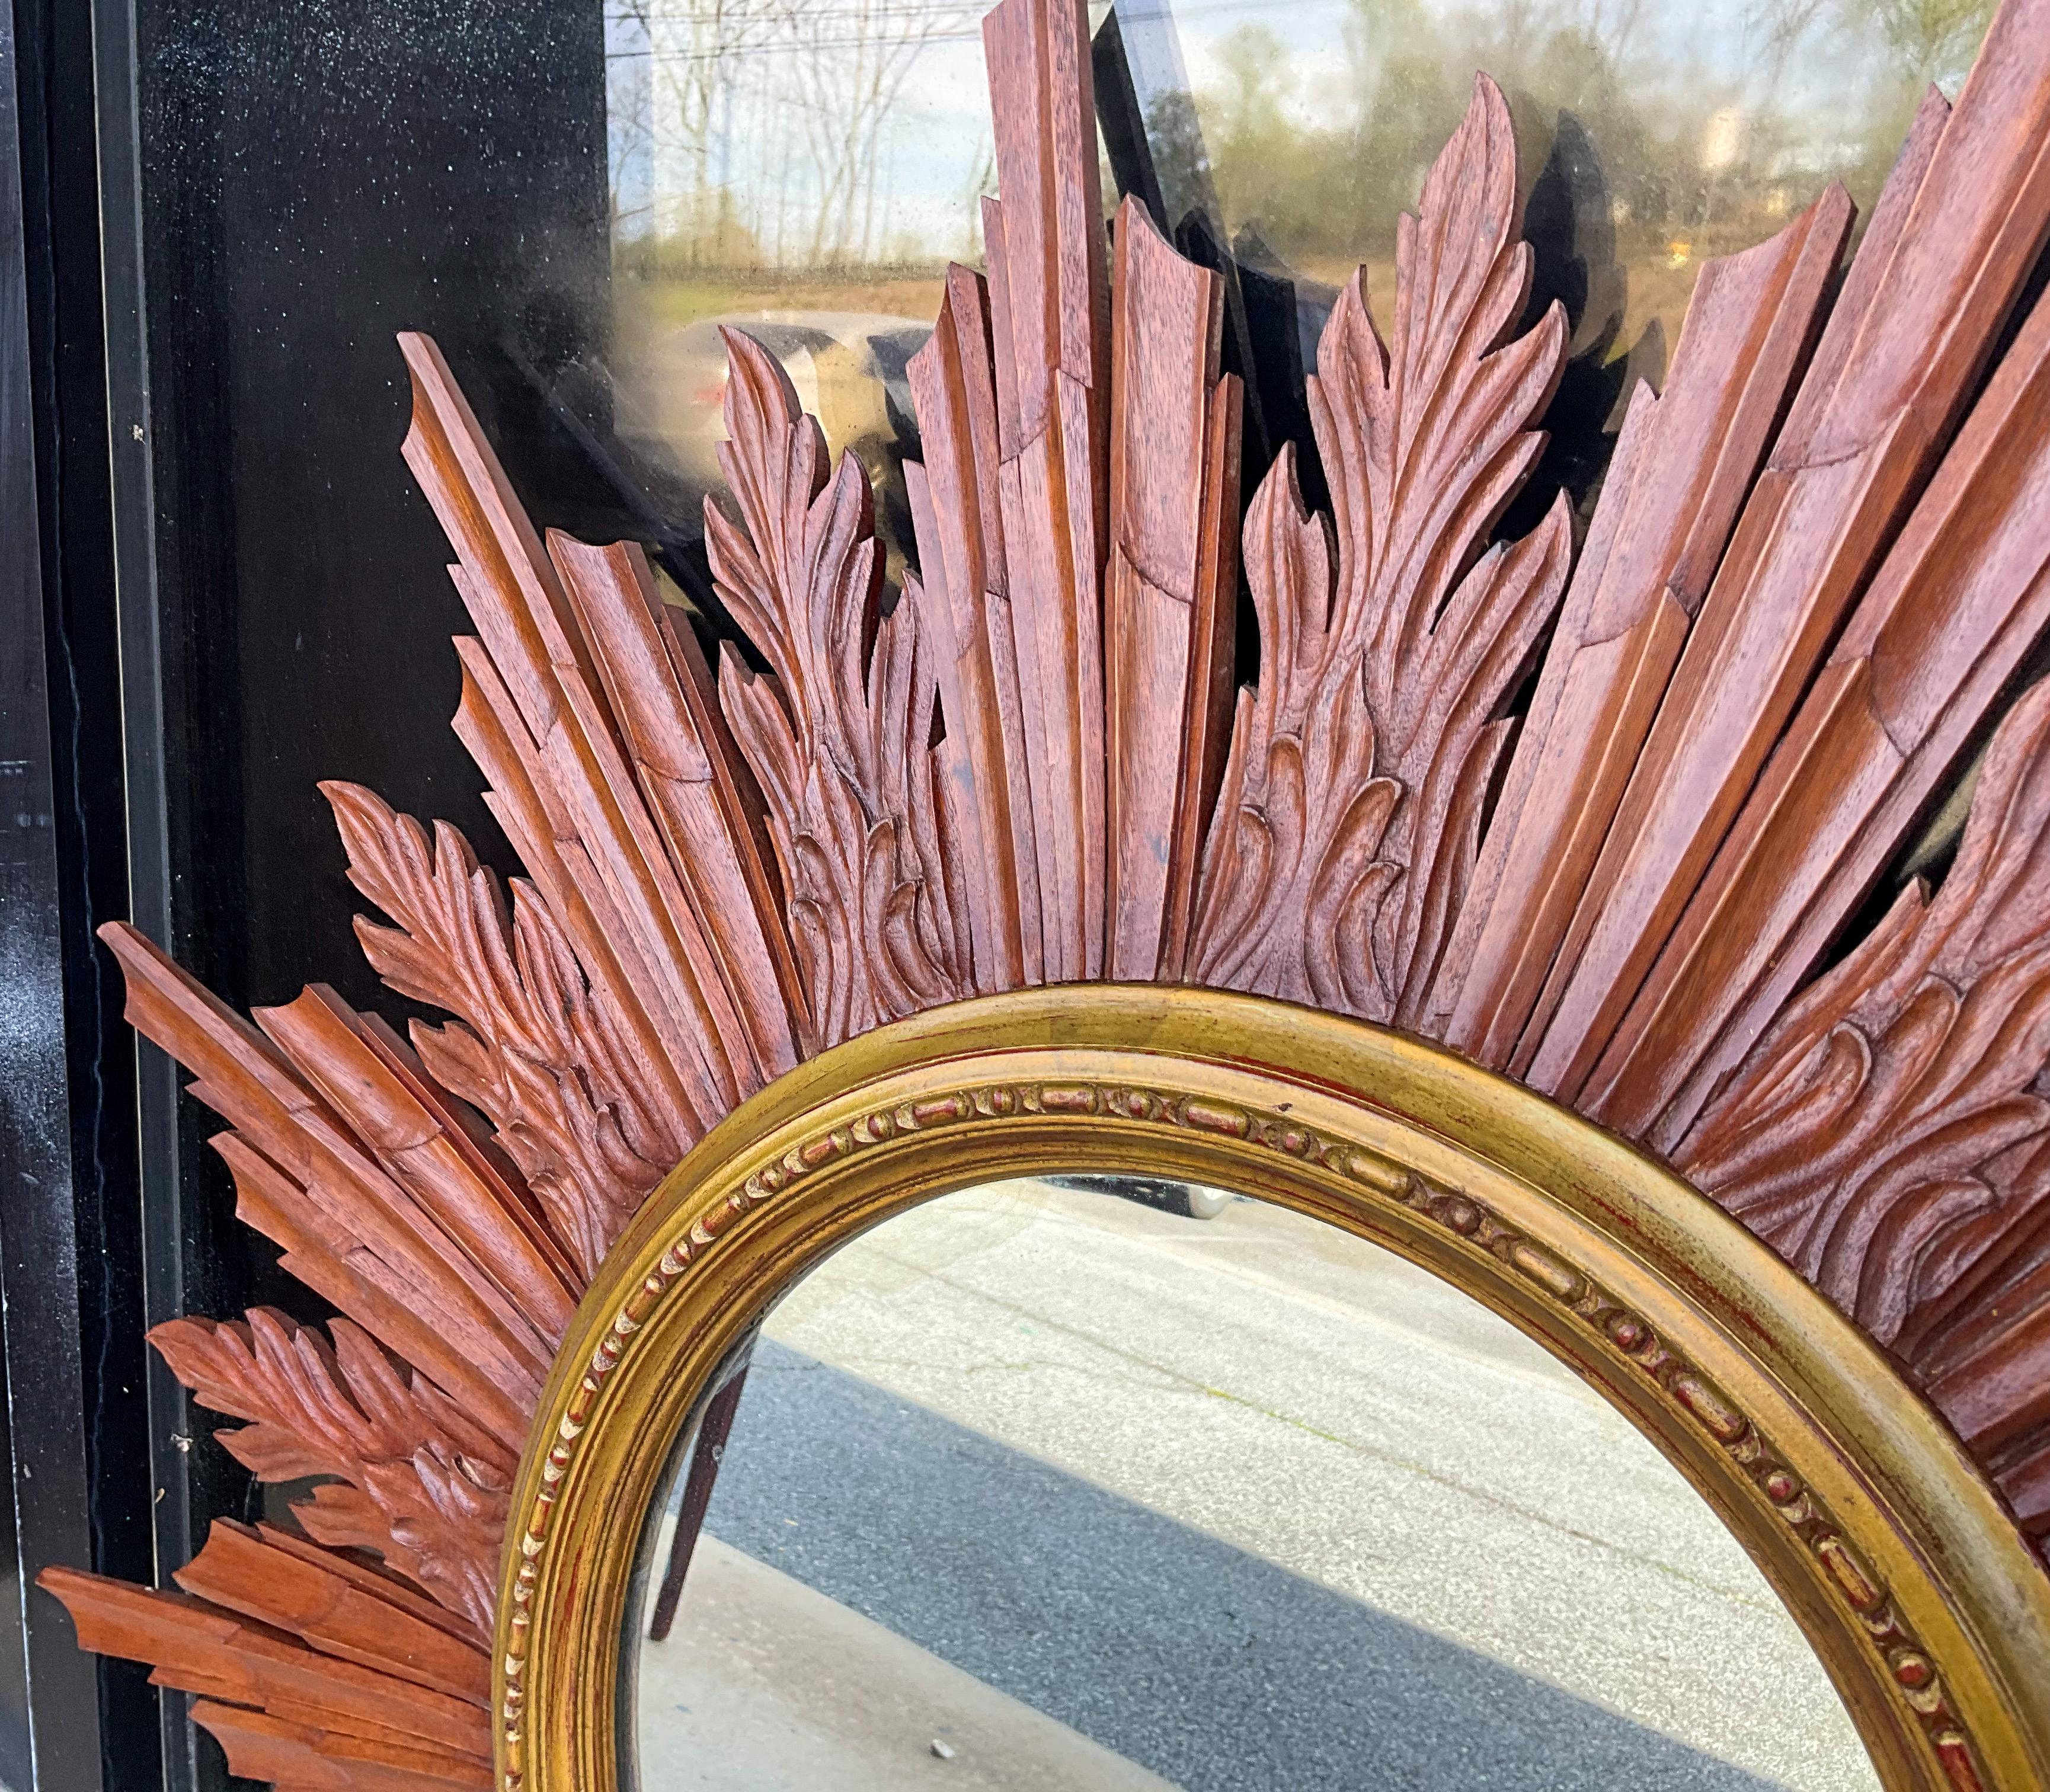 Il s'agit d'un grand miroir italien en bois doré et acajou sculpté en forme de soleil. Il est en très bon état et ne comporte aucune marque. Je pense que la combinaison de deux tons de bois et de bois doré lui confère une qualité particulière qui le